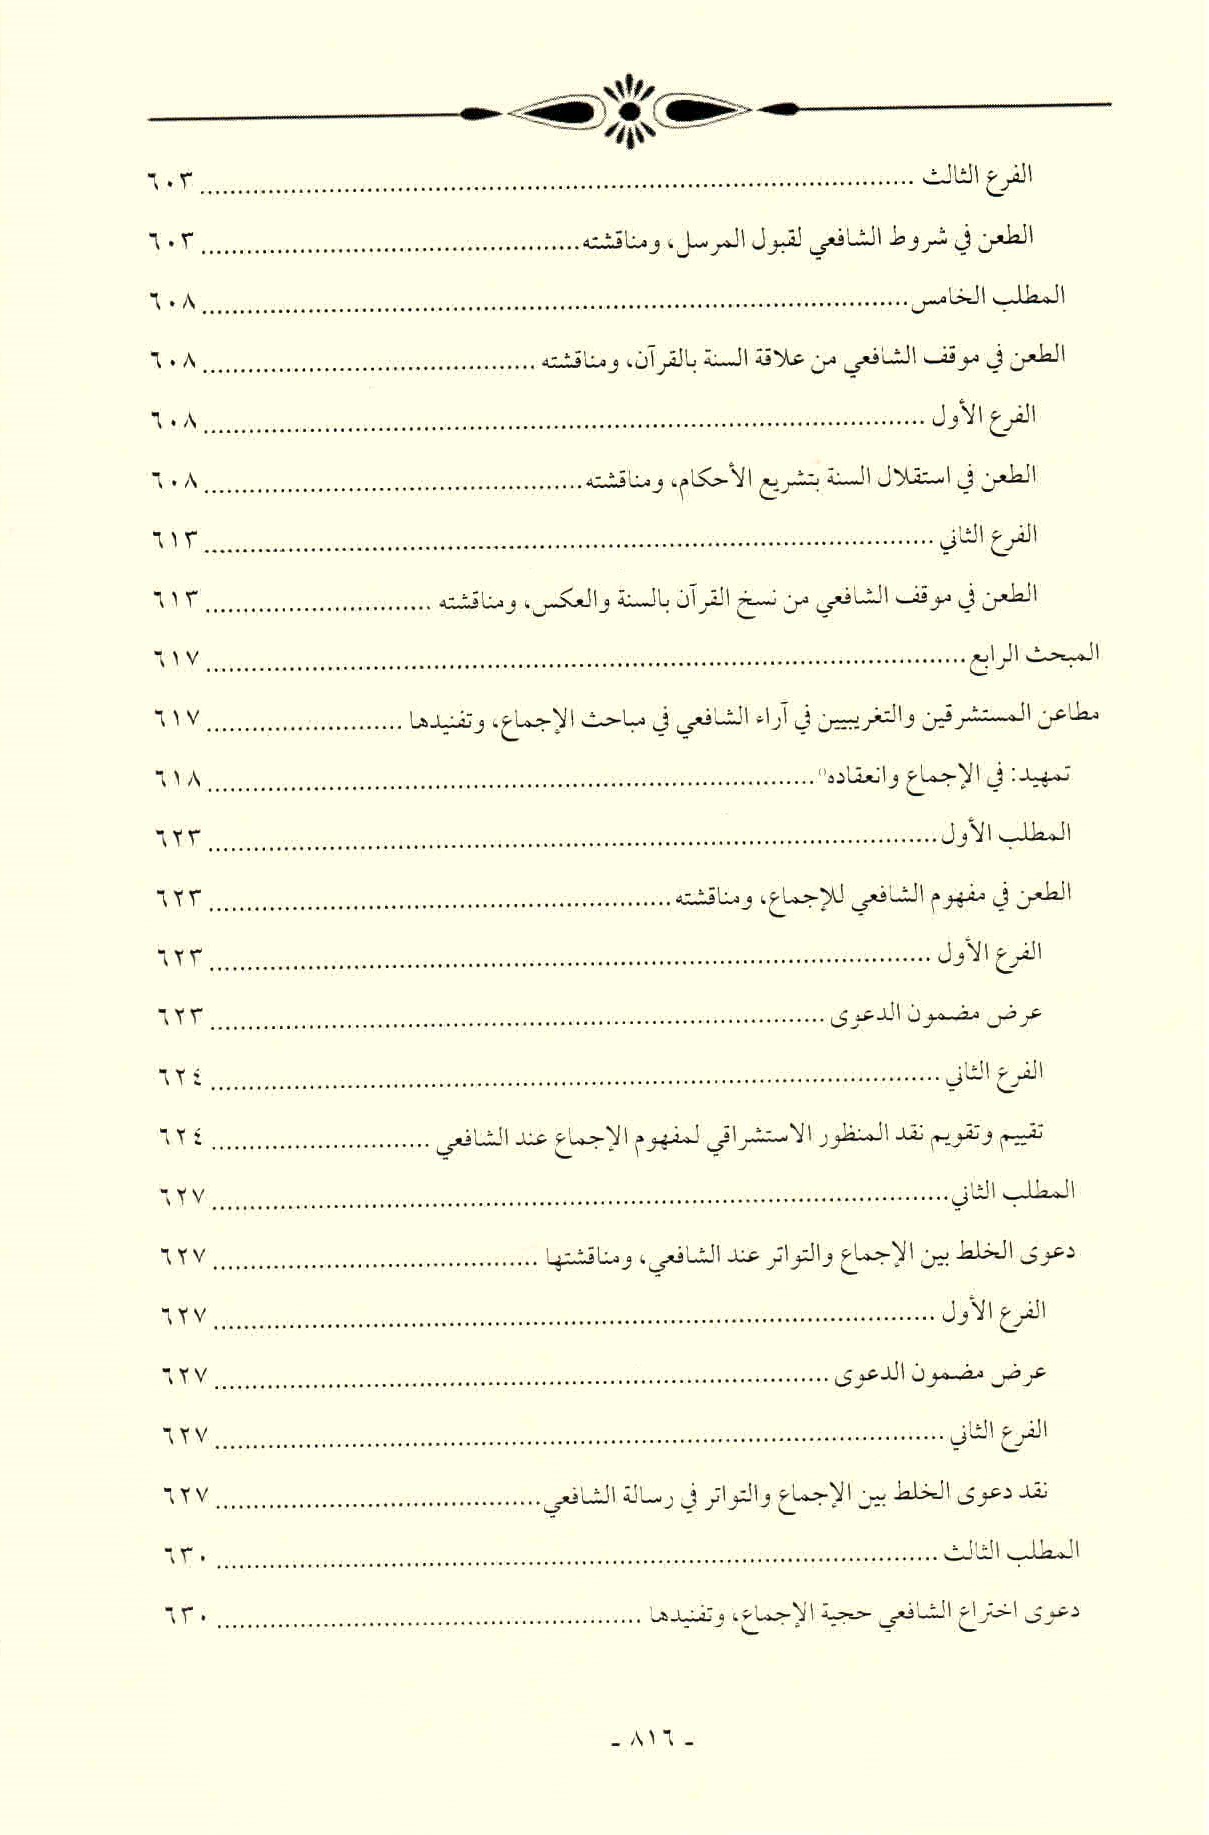 قائمة محتويات كتاب افتراءات المستشرقين والحداثيين على أصول الشريعة وأئمتها للدكتور هاني محمود ص. 816